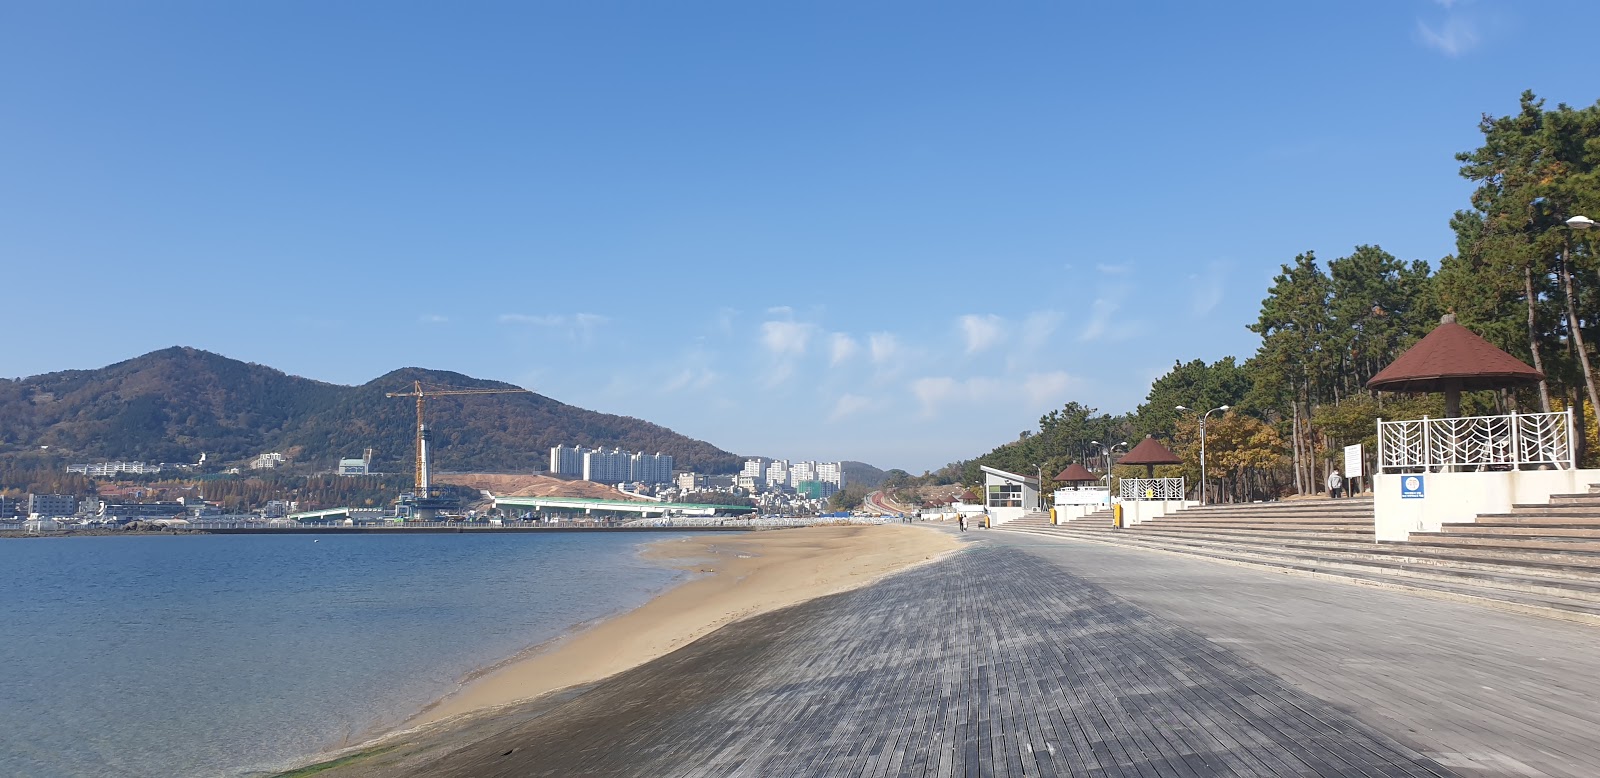 Foto av Ungcheon Beach Park och bosättningen